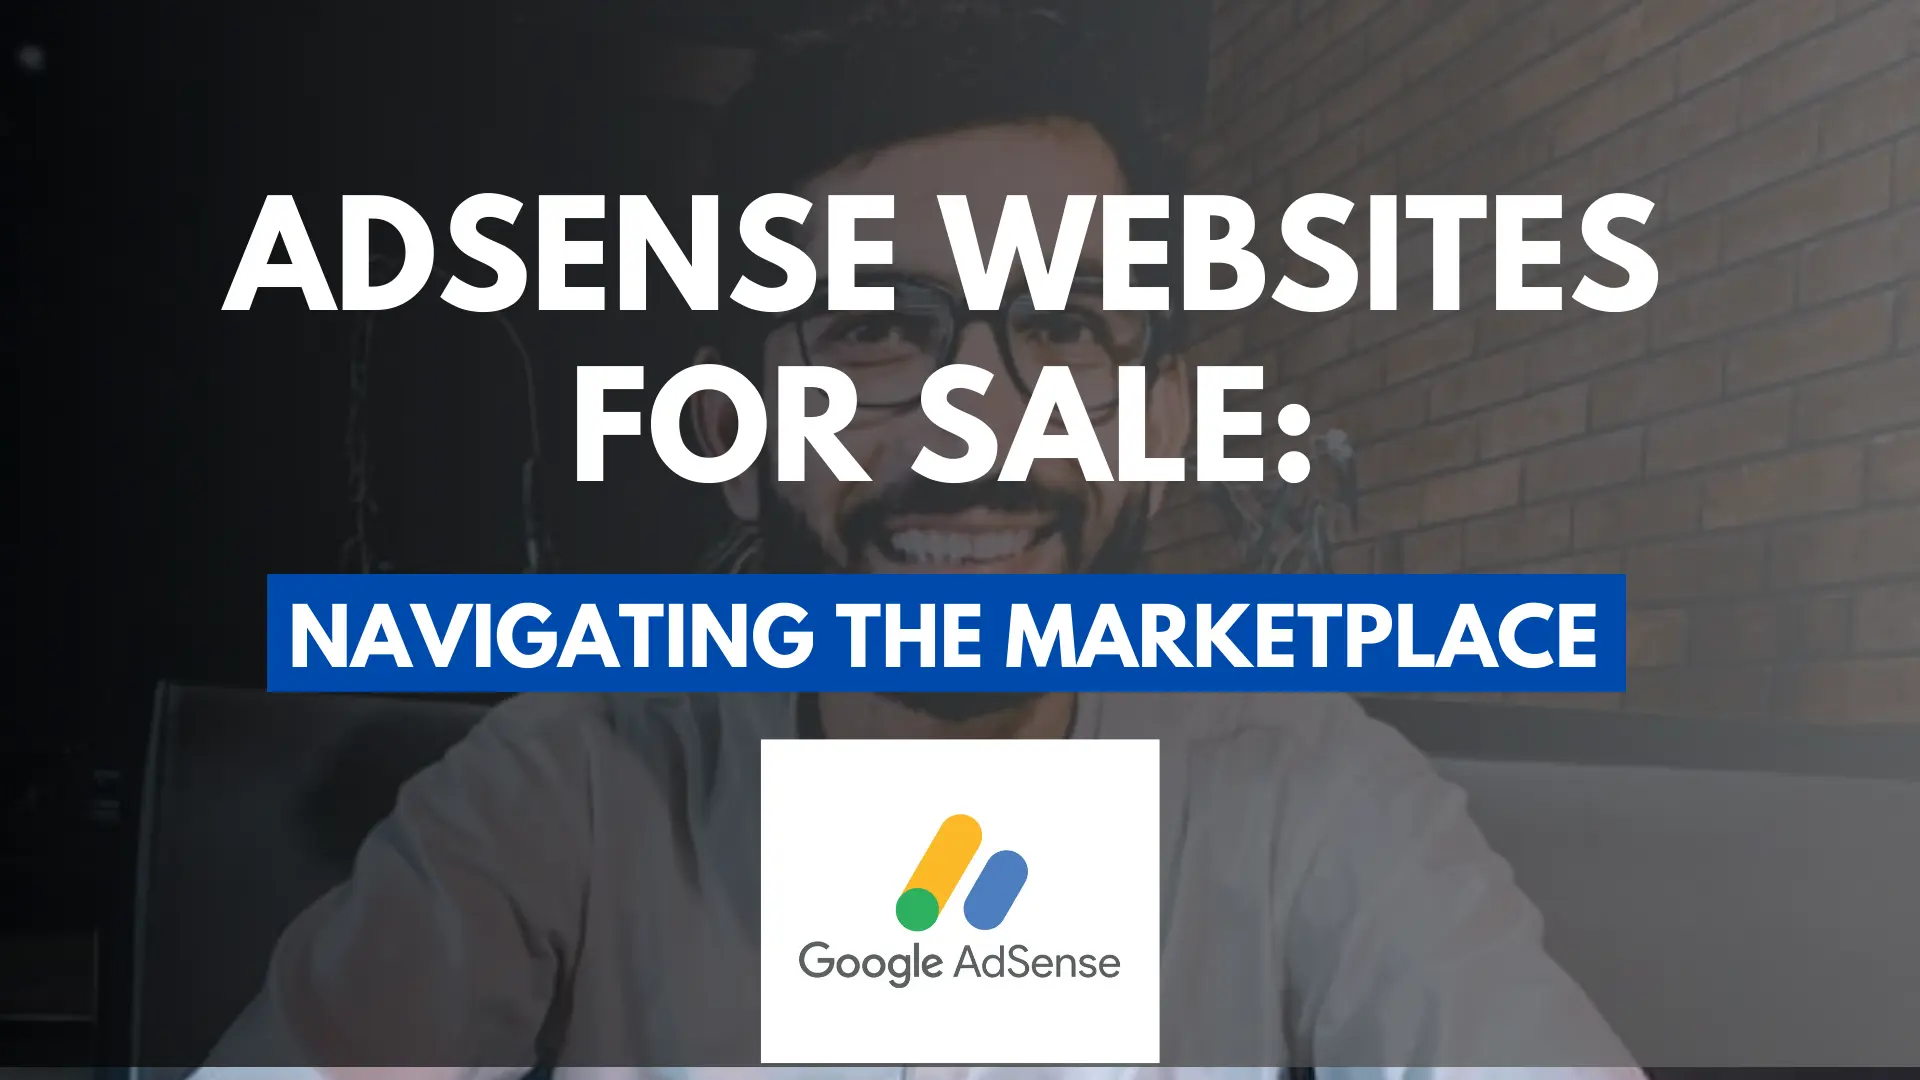 AdSense Websites For Sale